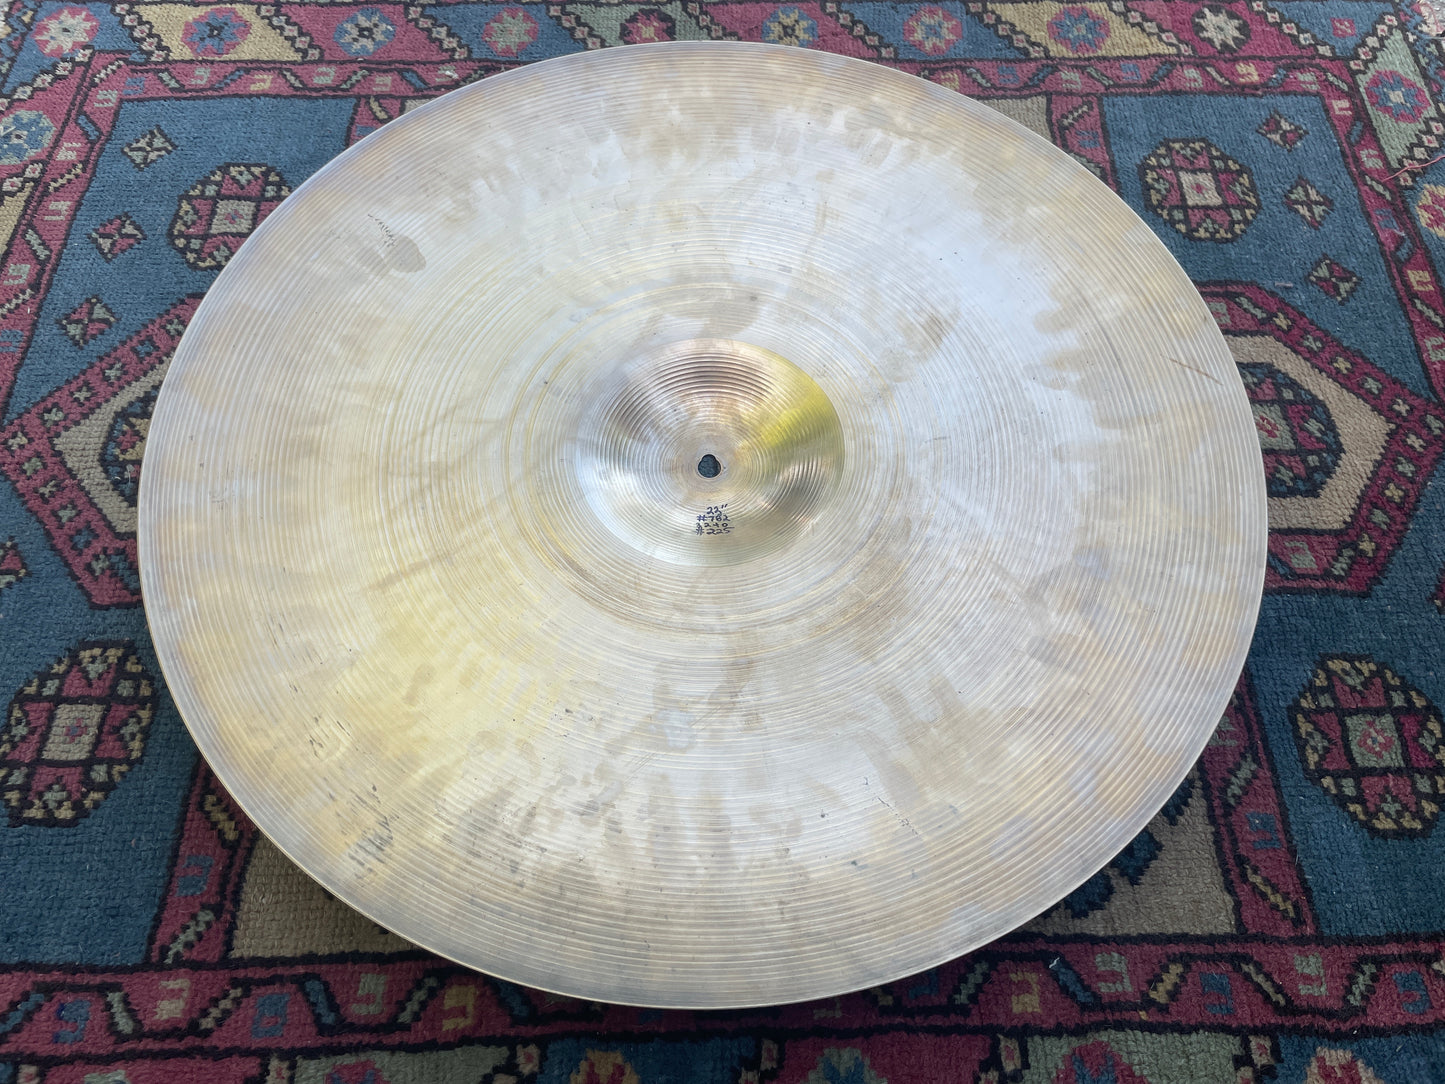 22" Zildjian A 1960s Ride Cymbal 3240g #782